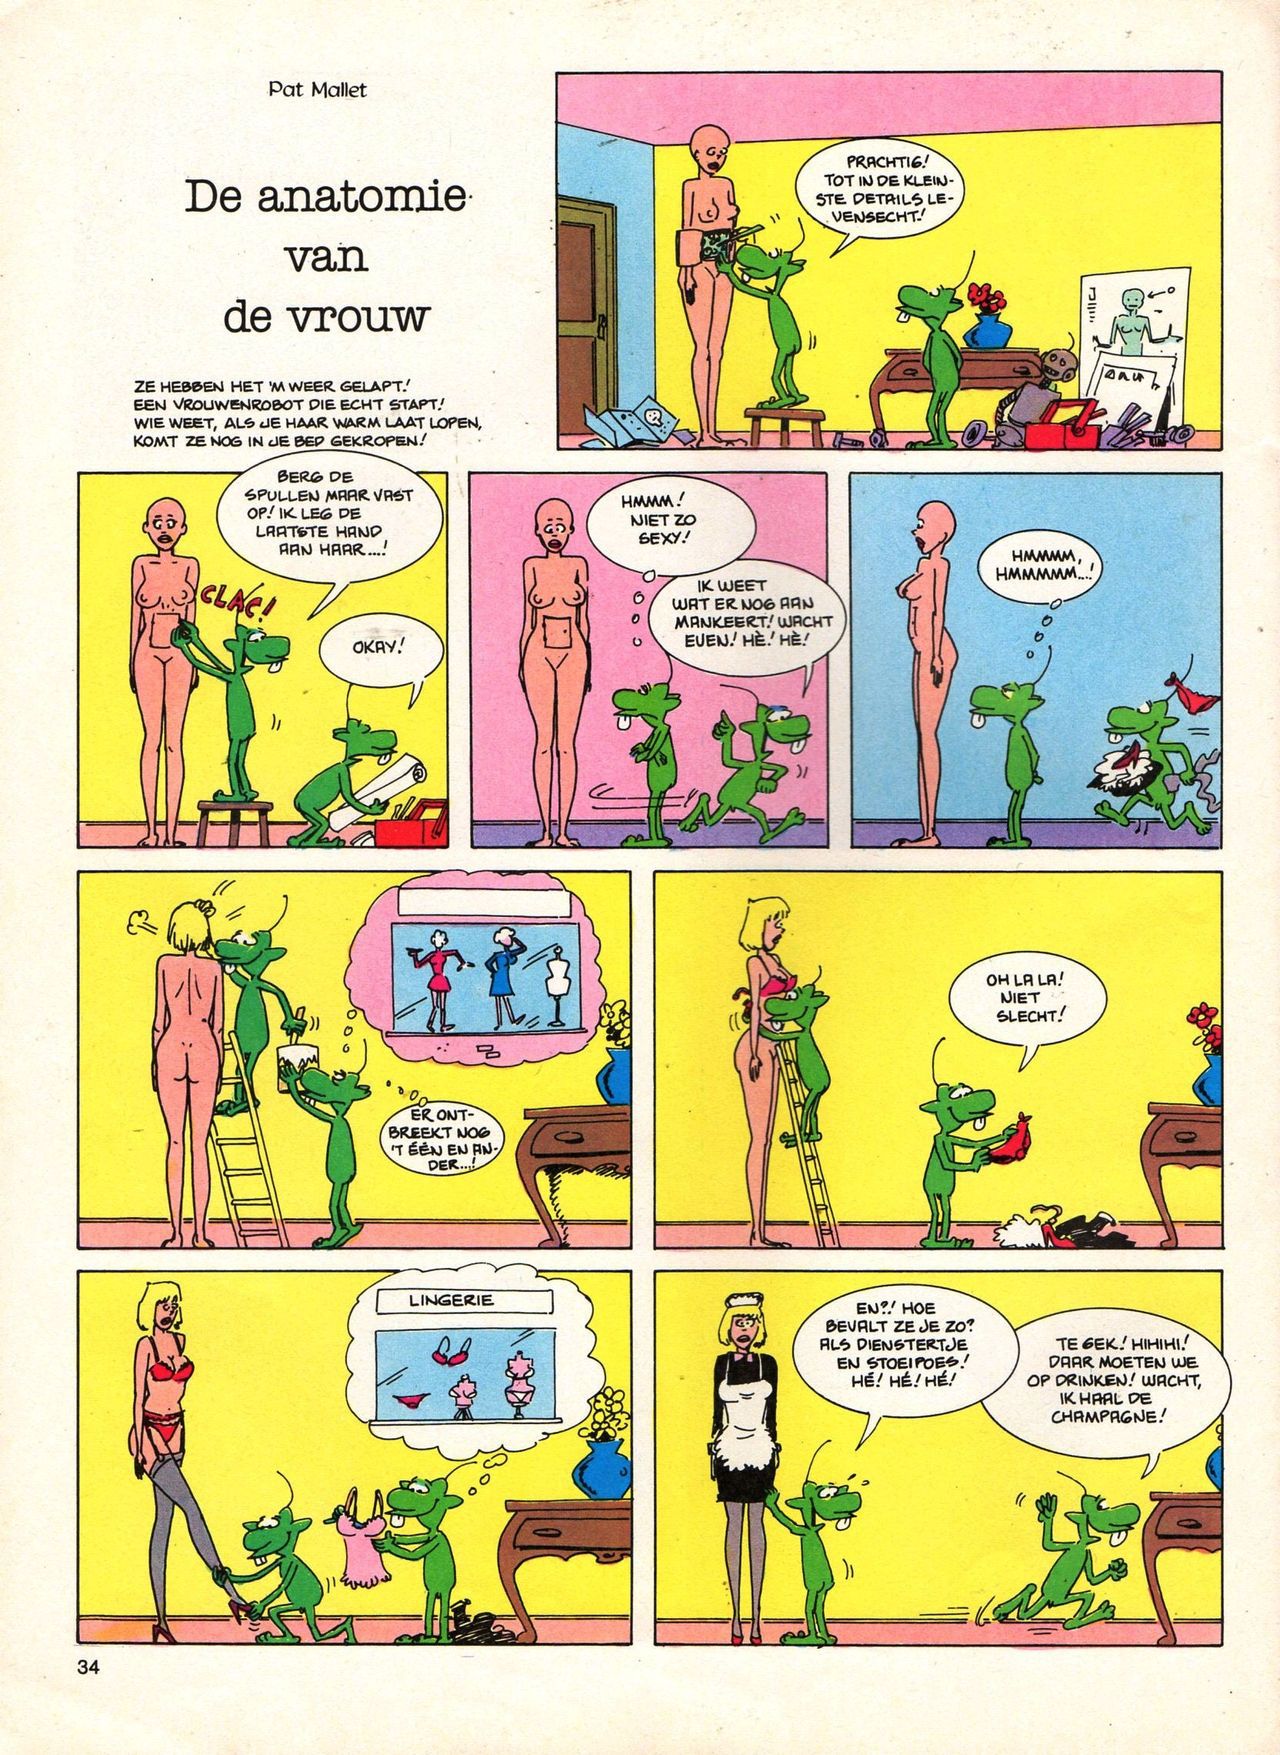 Het Is Groen En Het.. - 04 - Mag Ik Die Ballen.. OH, PARDON! (Dutch) Een oude humoristische serie van Pat Mallet 34